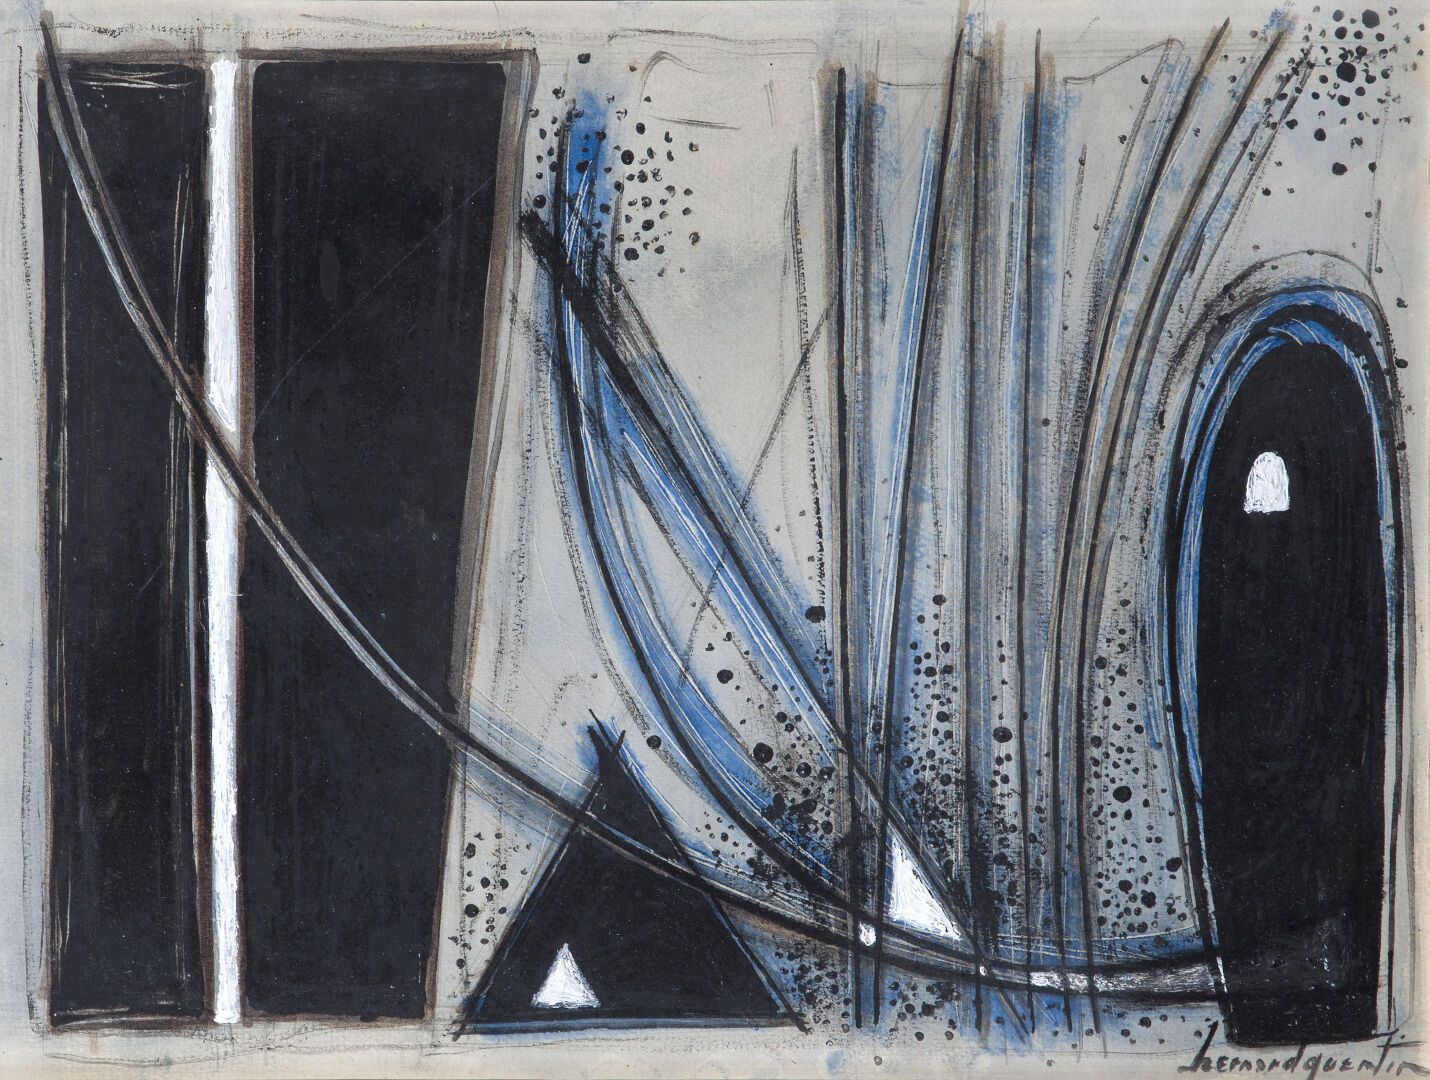 Null 伯纳德-昆廷 (1923-2020)
构成
纸板上的混合媒体
右下方有签名
27 x 36,5 cm